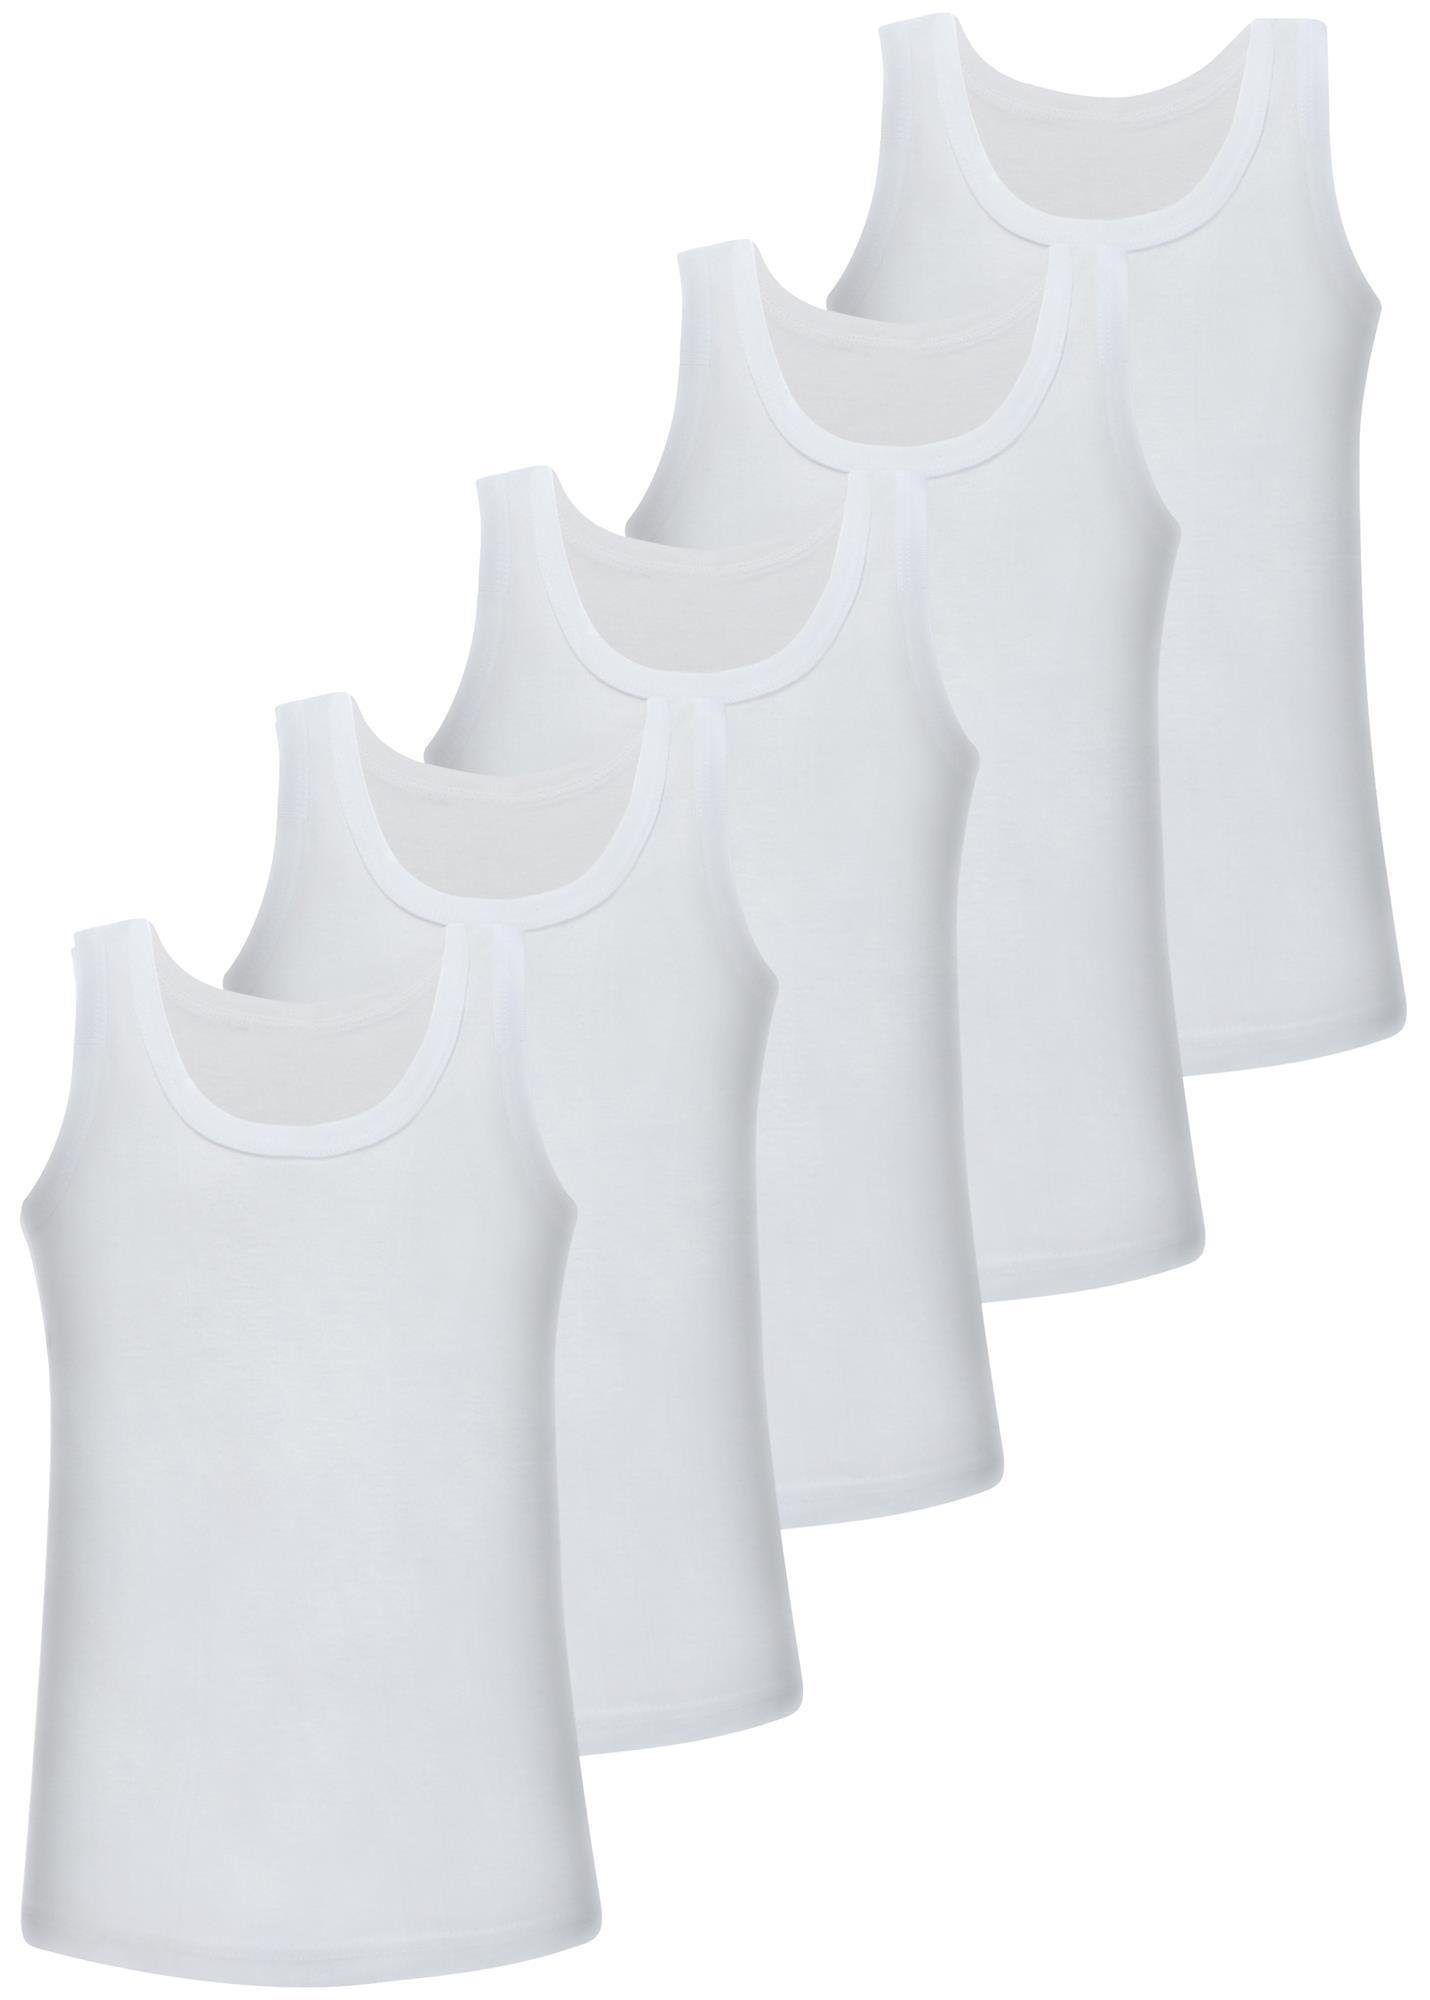 LOREZA Unterhemd 5 Jungen 100% Baumwolle Unterhemden ohne Seitennaht (Spar-Packung, 5-St) Weiss | Ärmellose Unterhemden